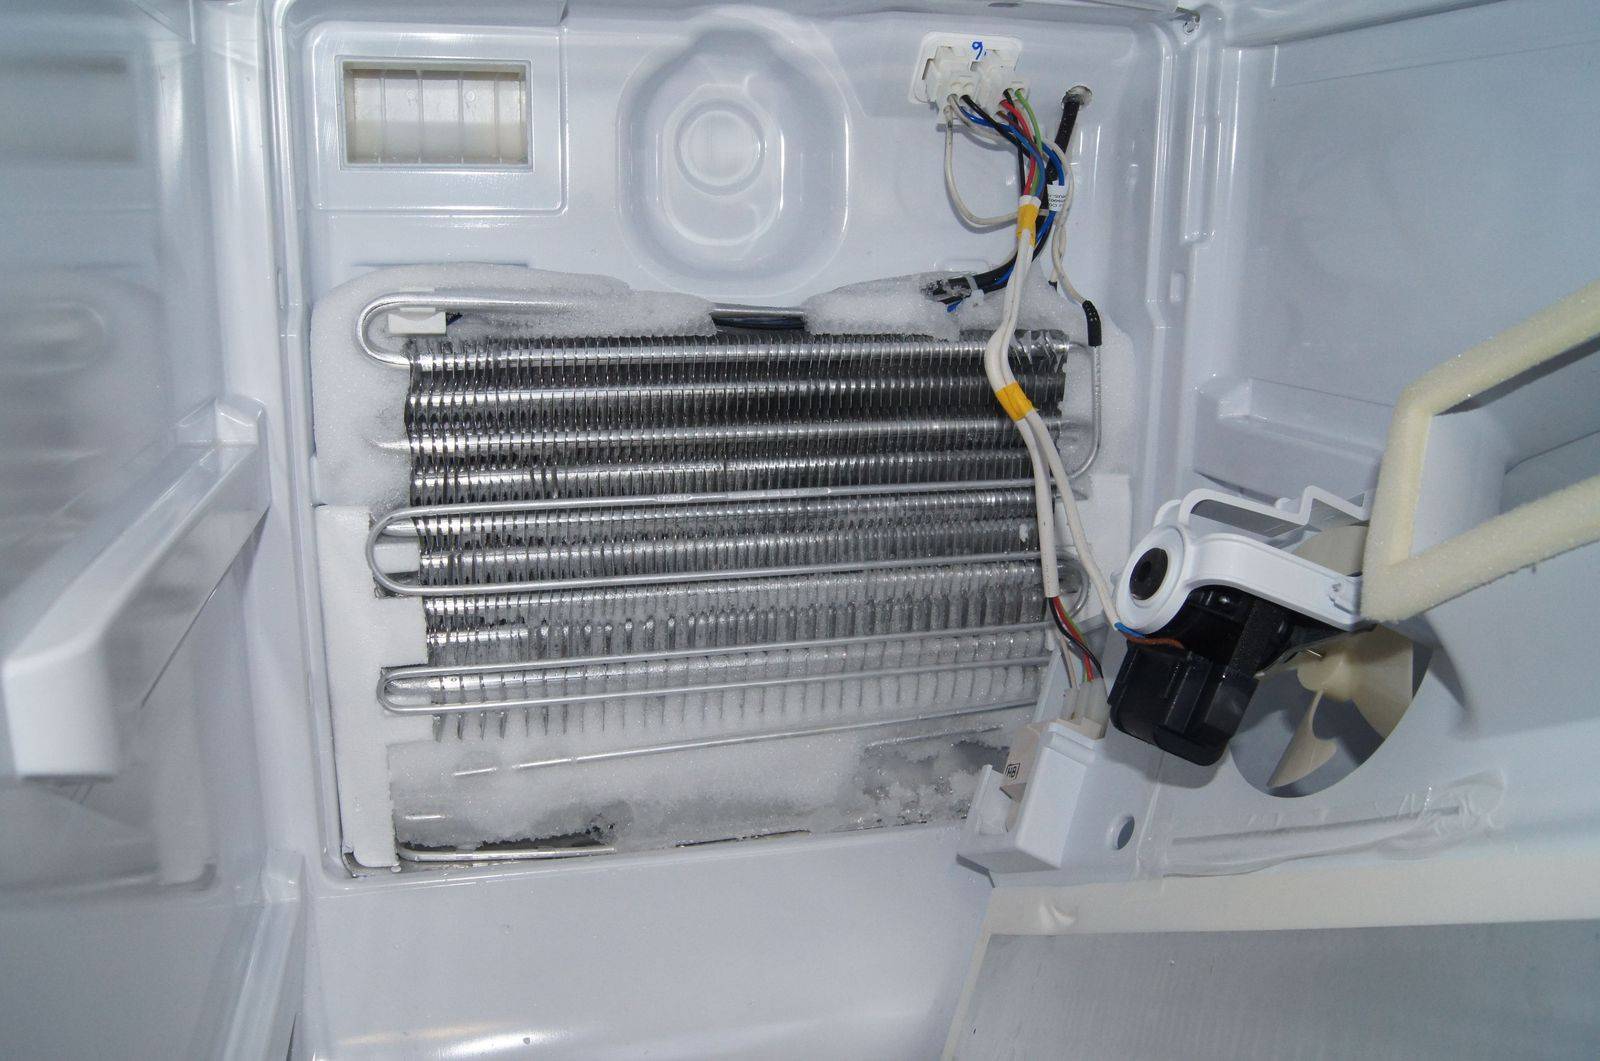 Что такое no frost в холодильнике и как работает данная система в 2021 году